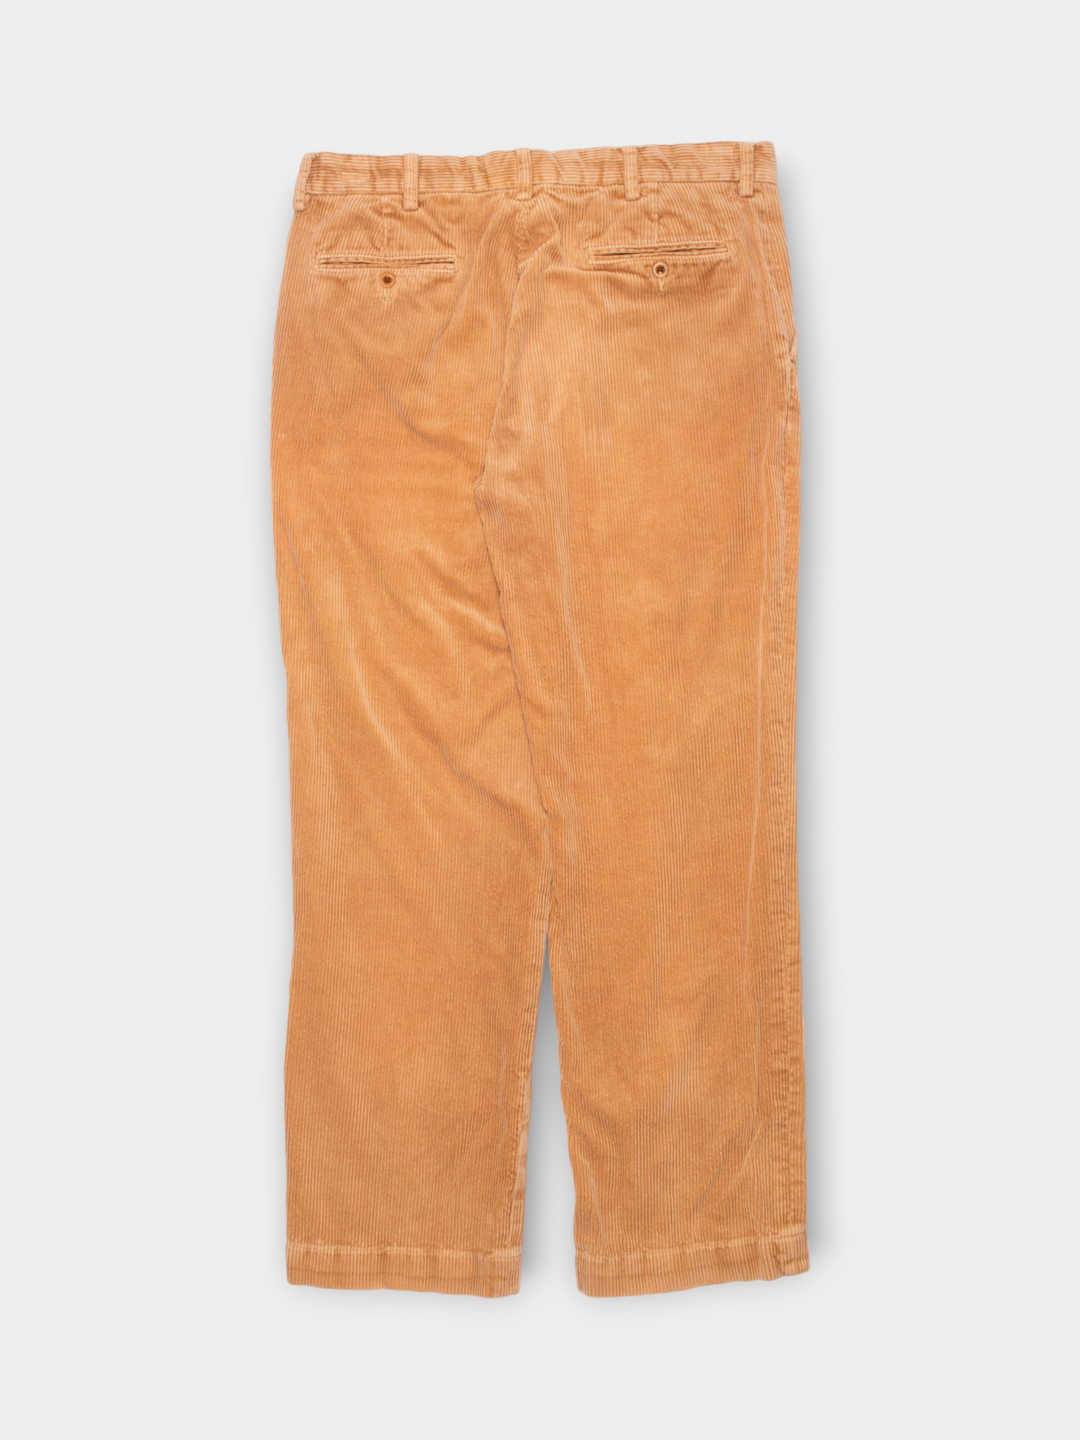 90s Ralph Lauren Corduroy Pants (34”)